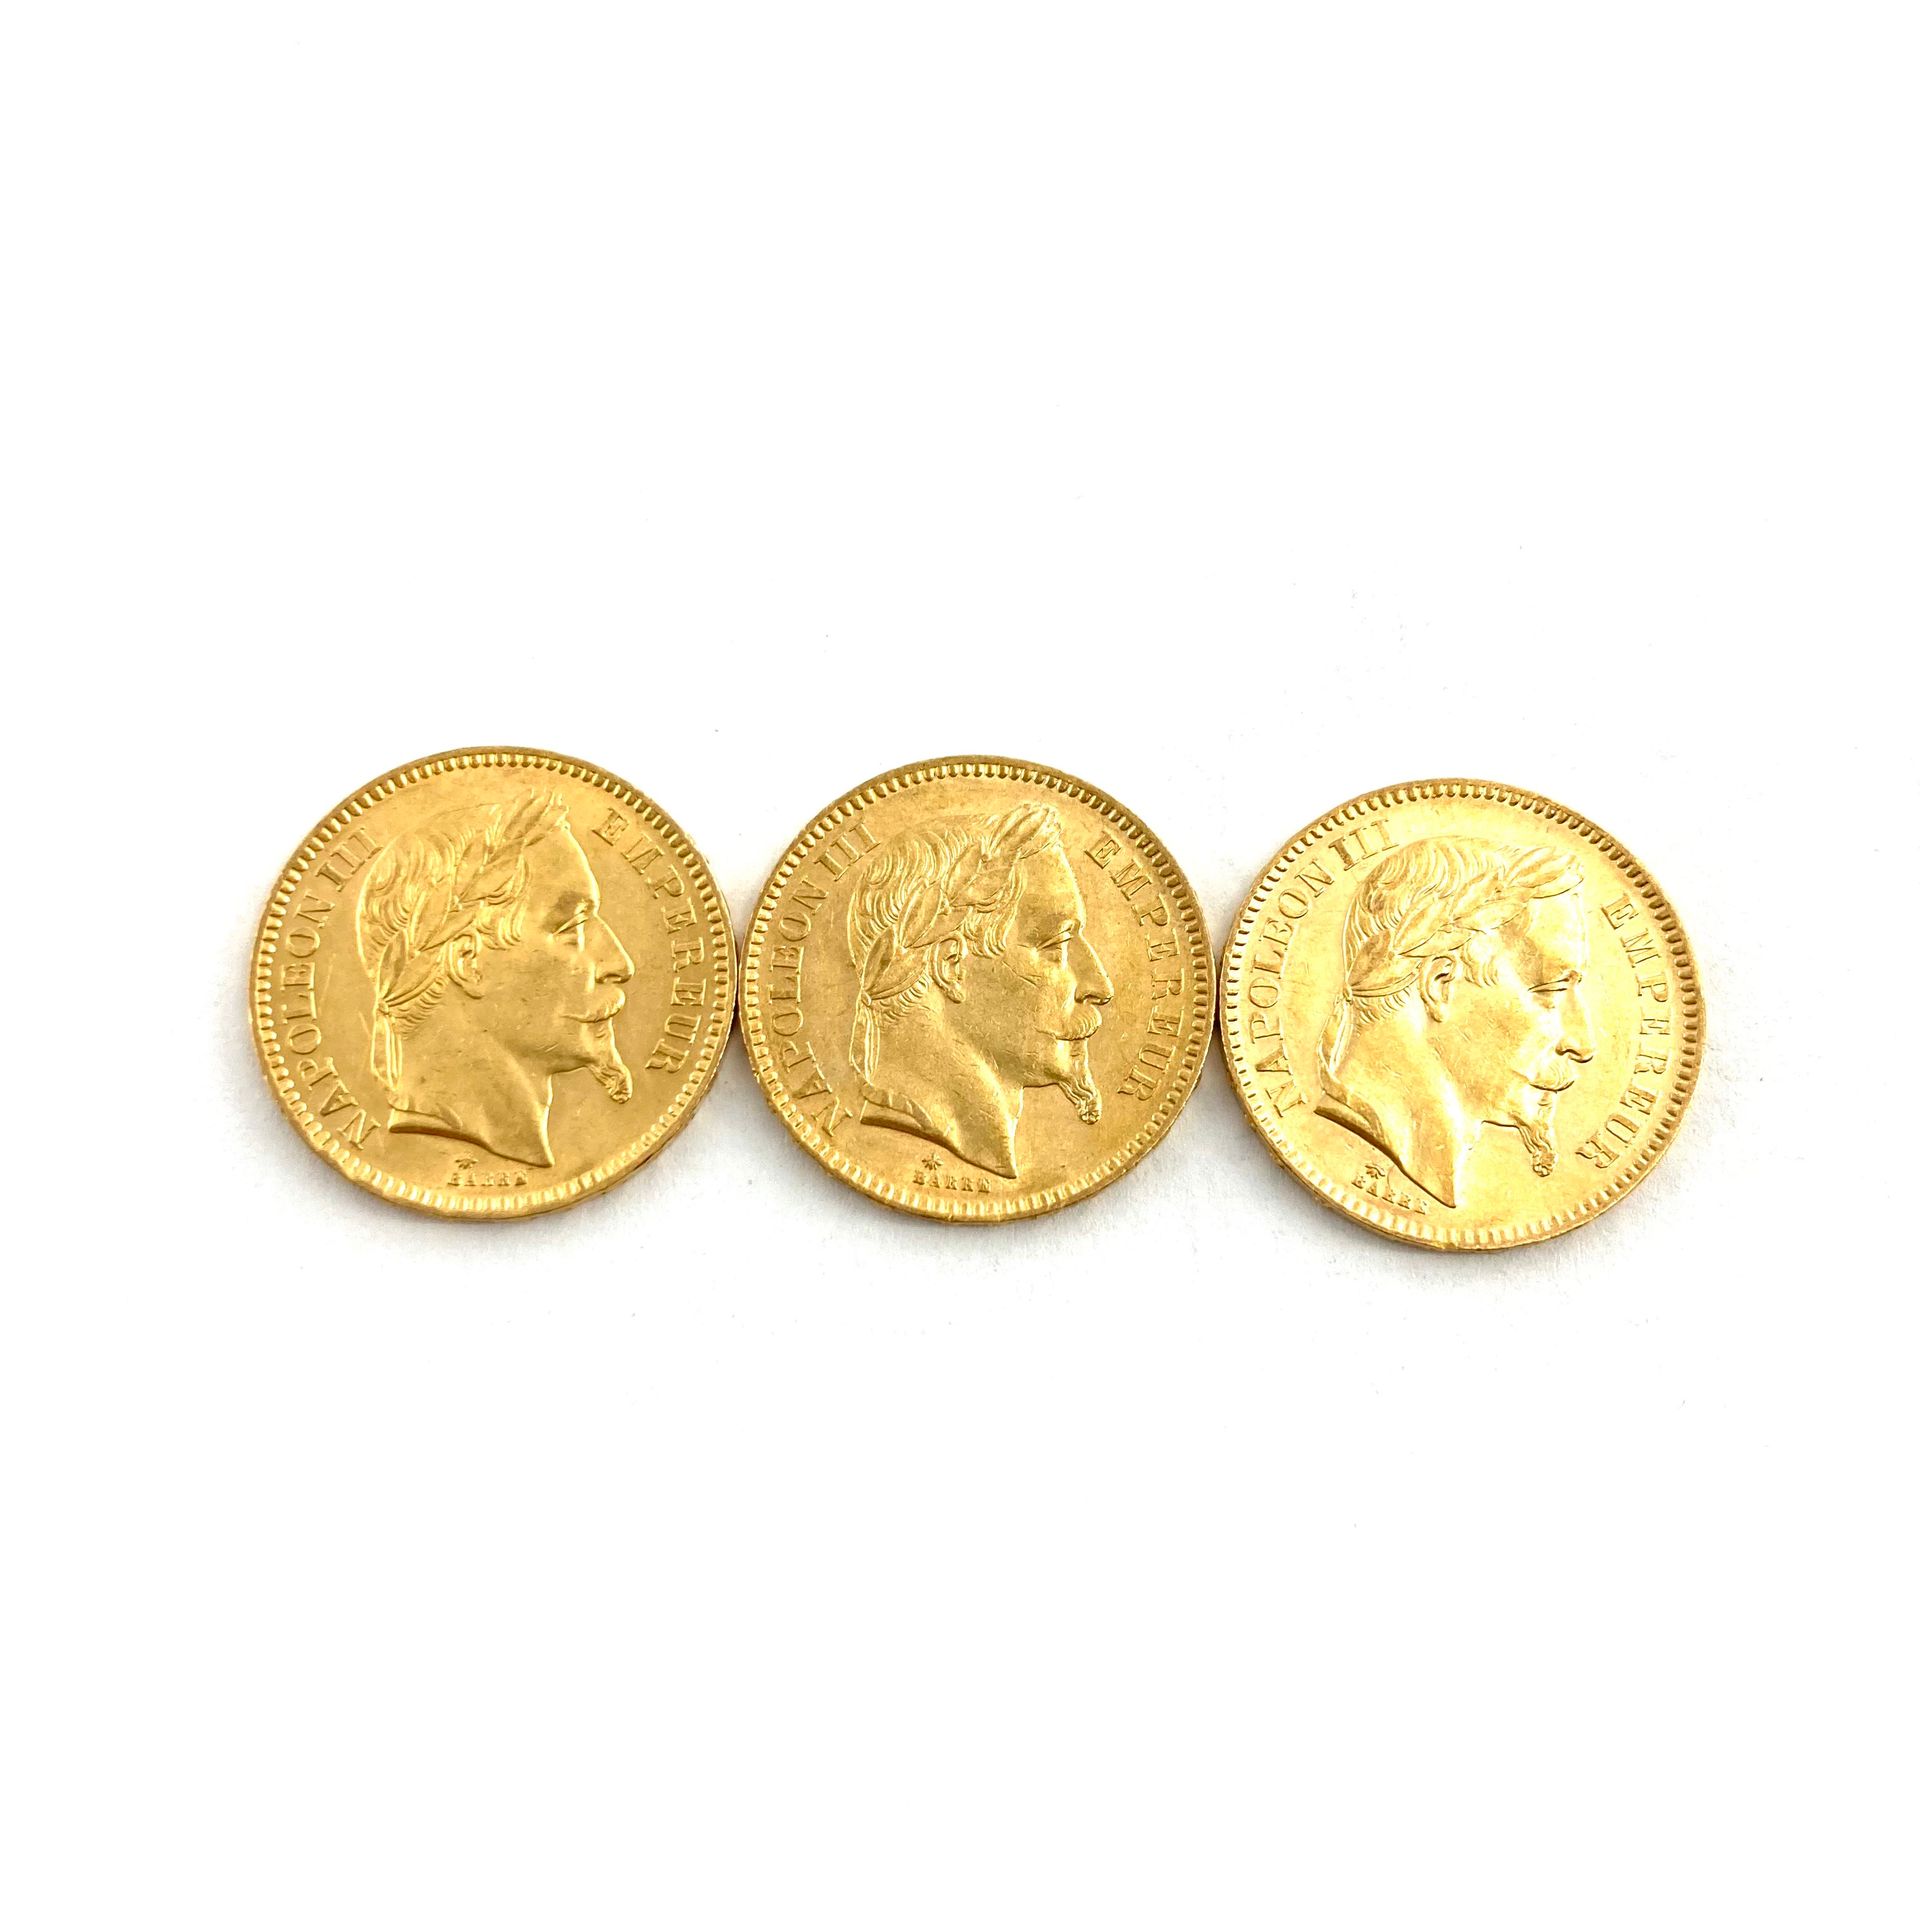 Null Tres monedas de oro de 20 francos cabeza de Napoleón III.

1865 A (x3) 



&hellip;